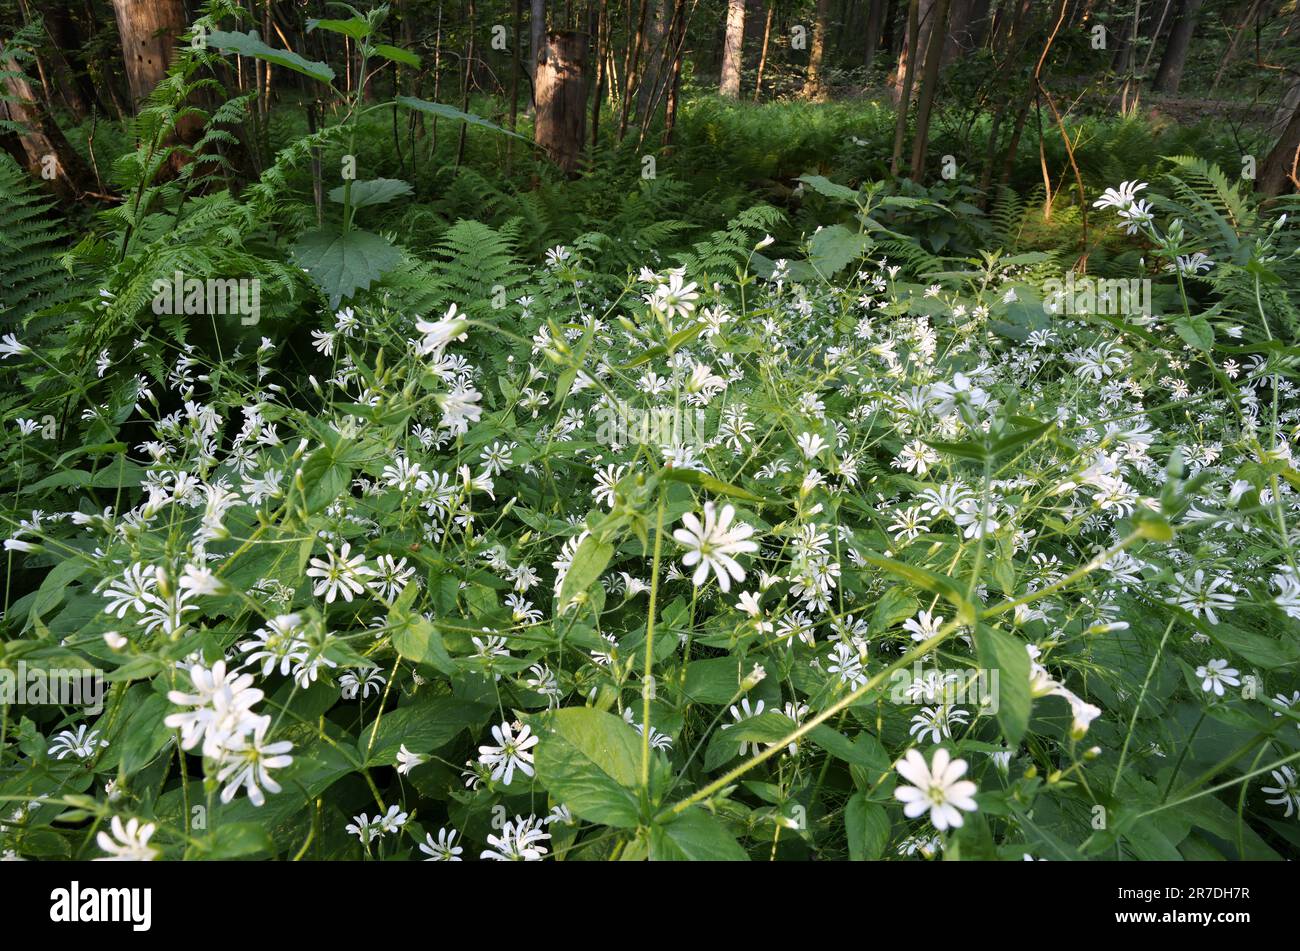 Starwort flowering Stock Photo